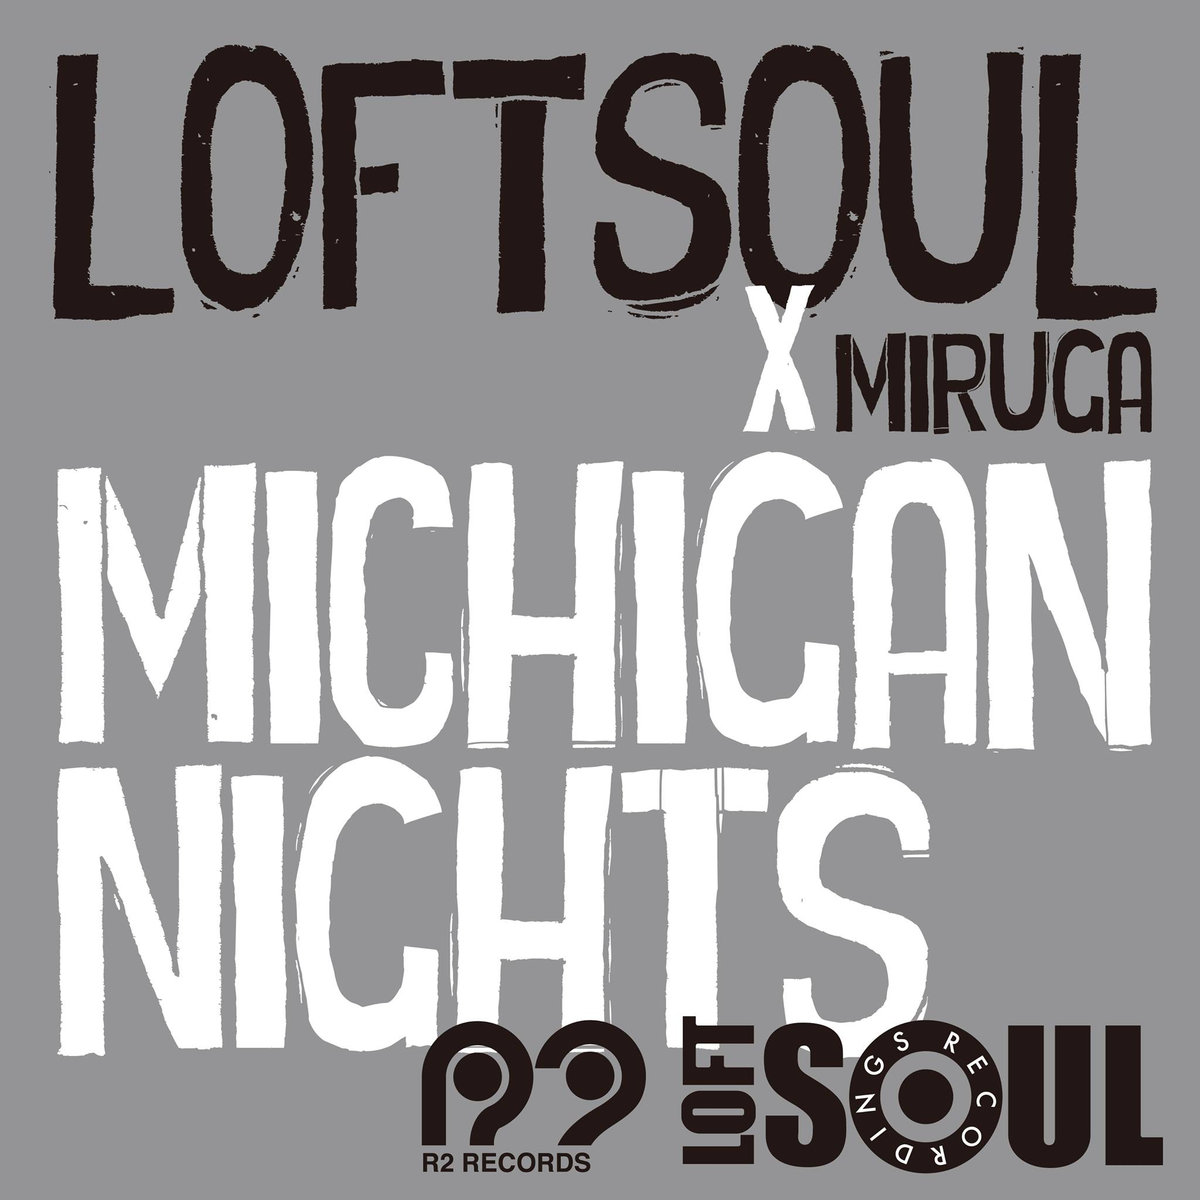 Loftsoul x Miruga - Michigan Nights / R2 Records